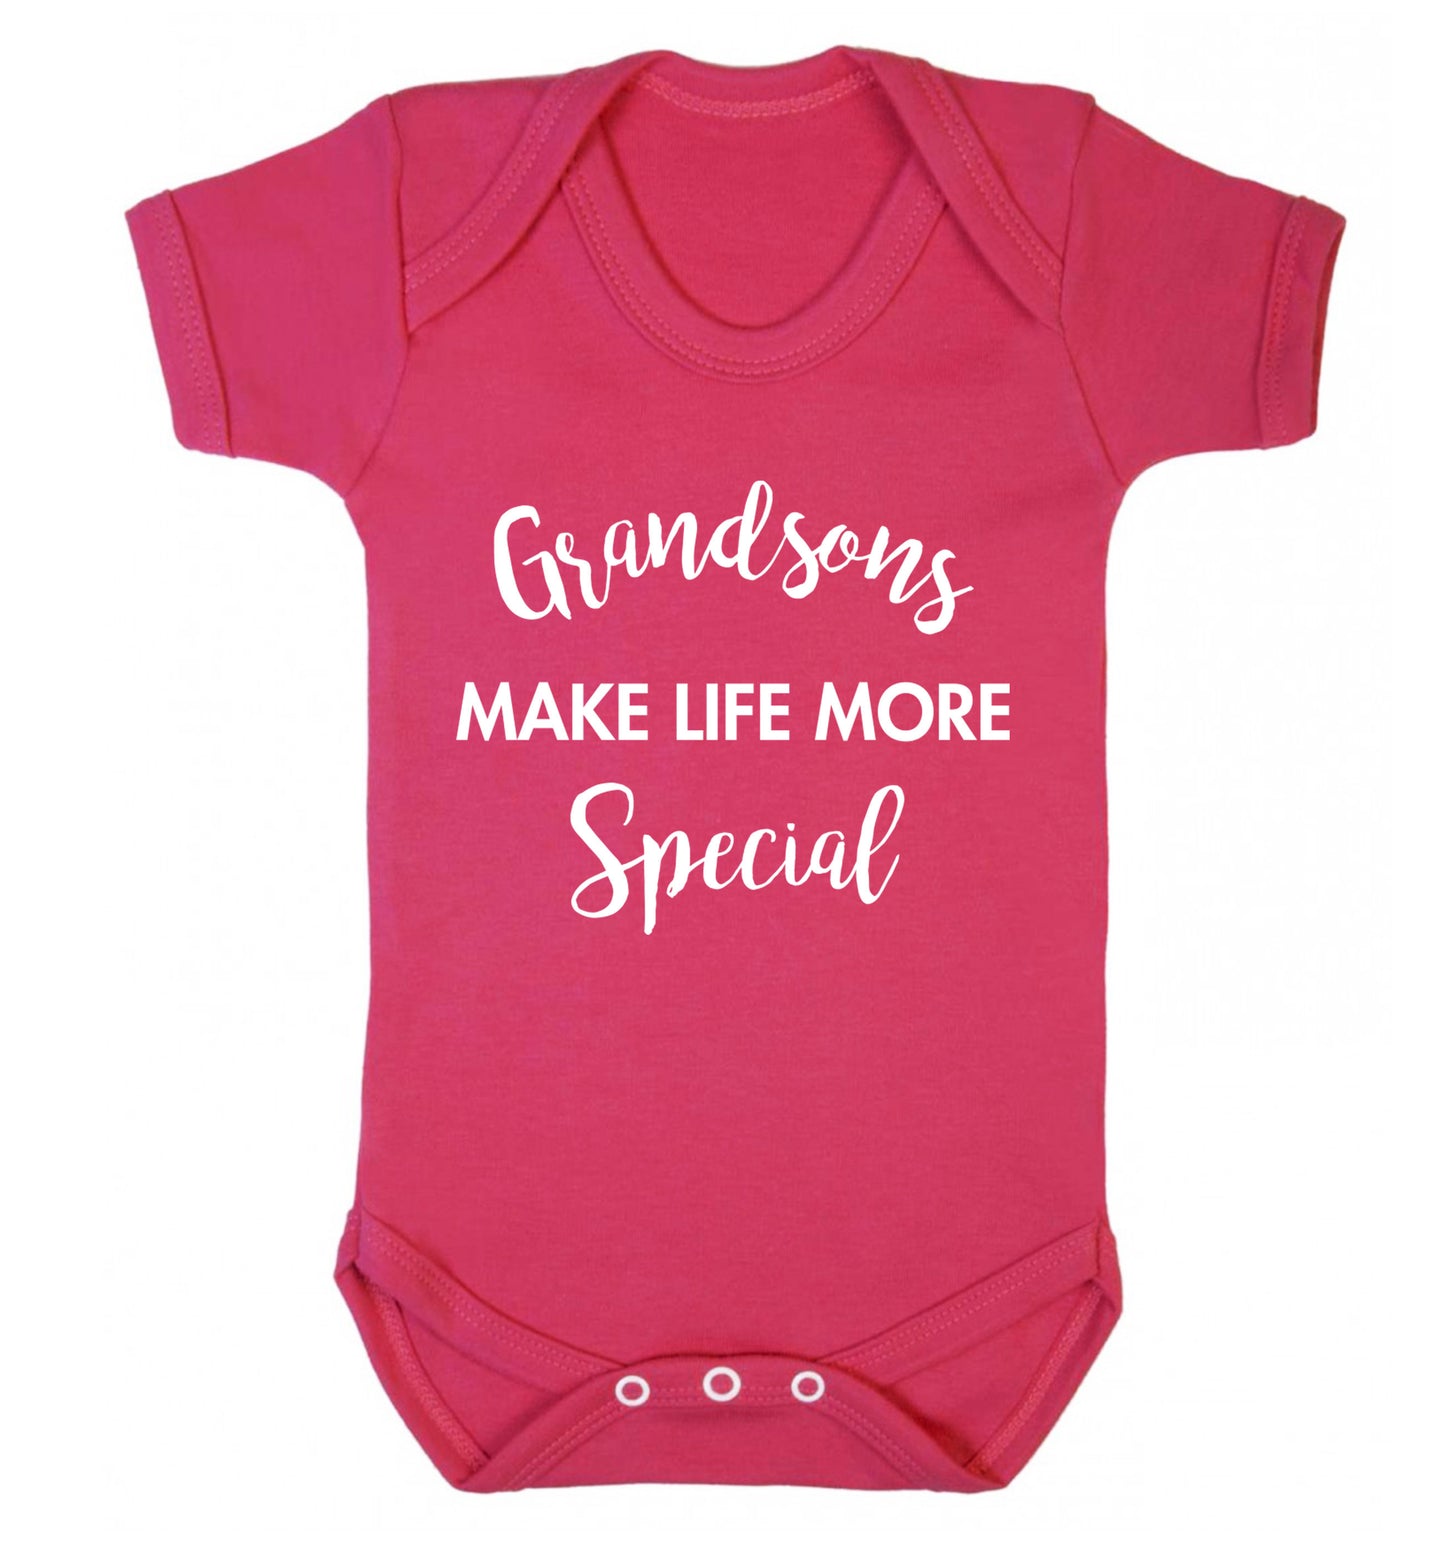 Grandsons make life more special Baby Vest dark pink 18-24 months